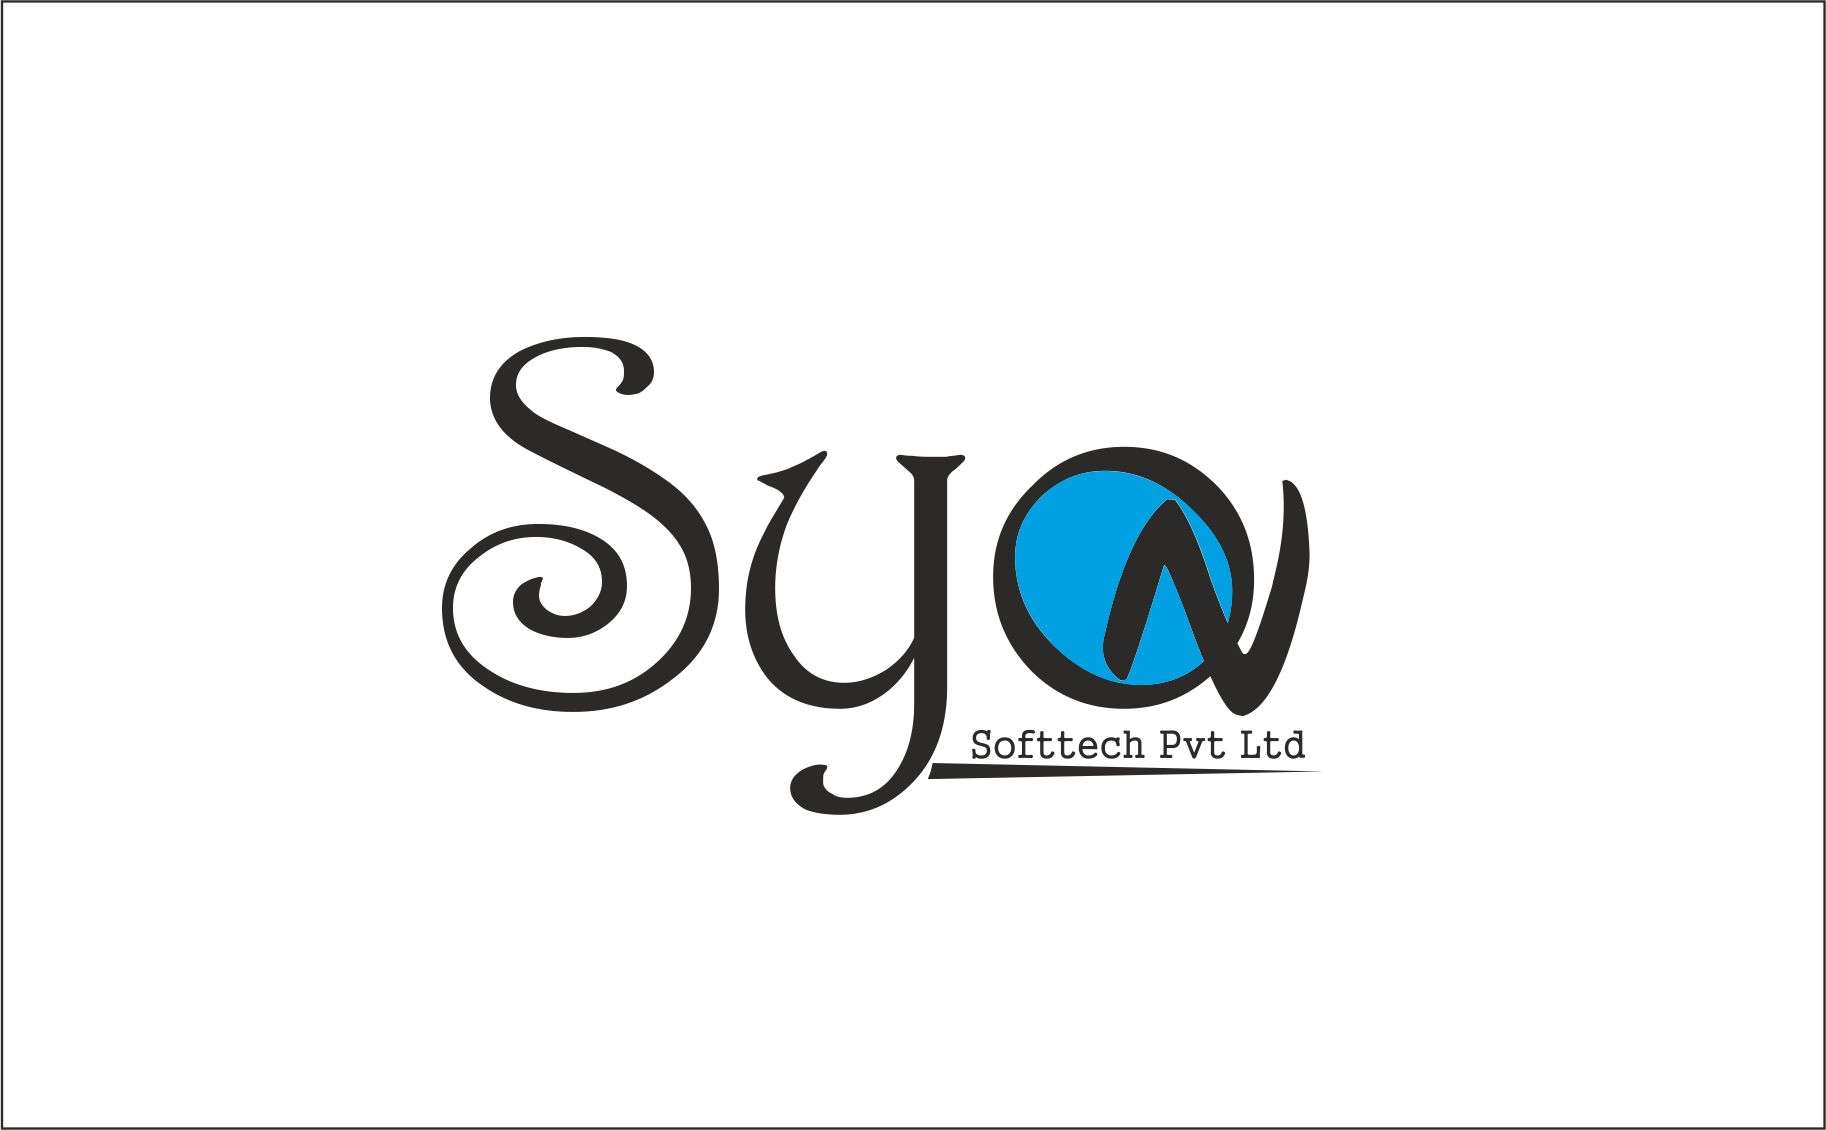 Syon Softtech Pvt Ltd